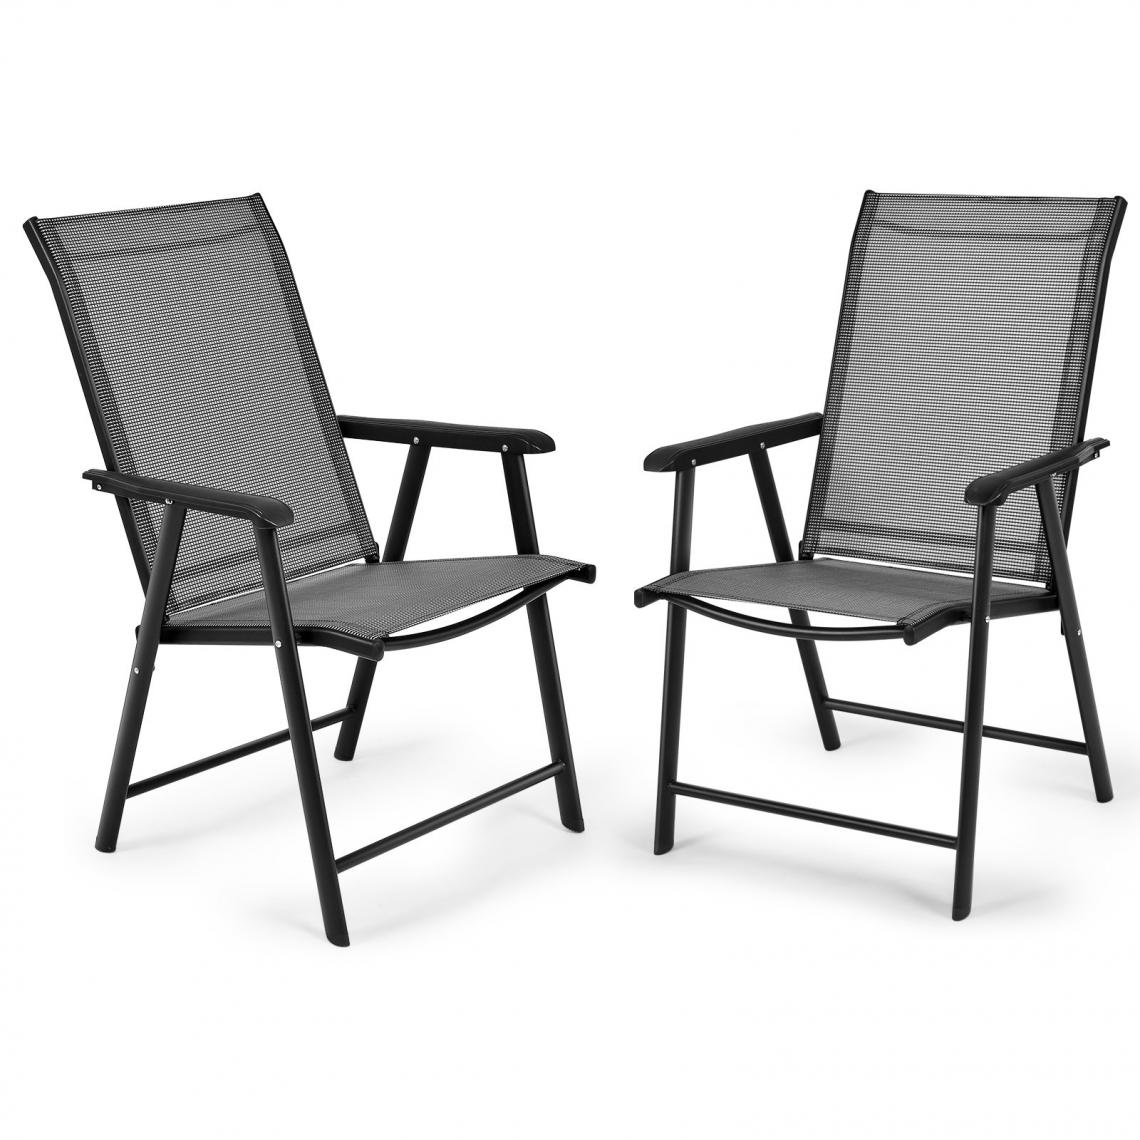 Decoshop26 - Lot de 2 chaises de jardin pliantes avec accoudoir dossier haut cadre en métal charge 100 kg pour extérieur camping plage 20_0000735 - Chaises de jardin